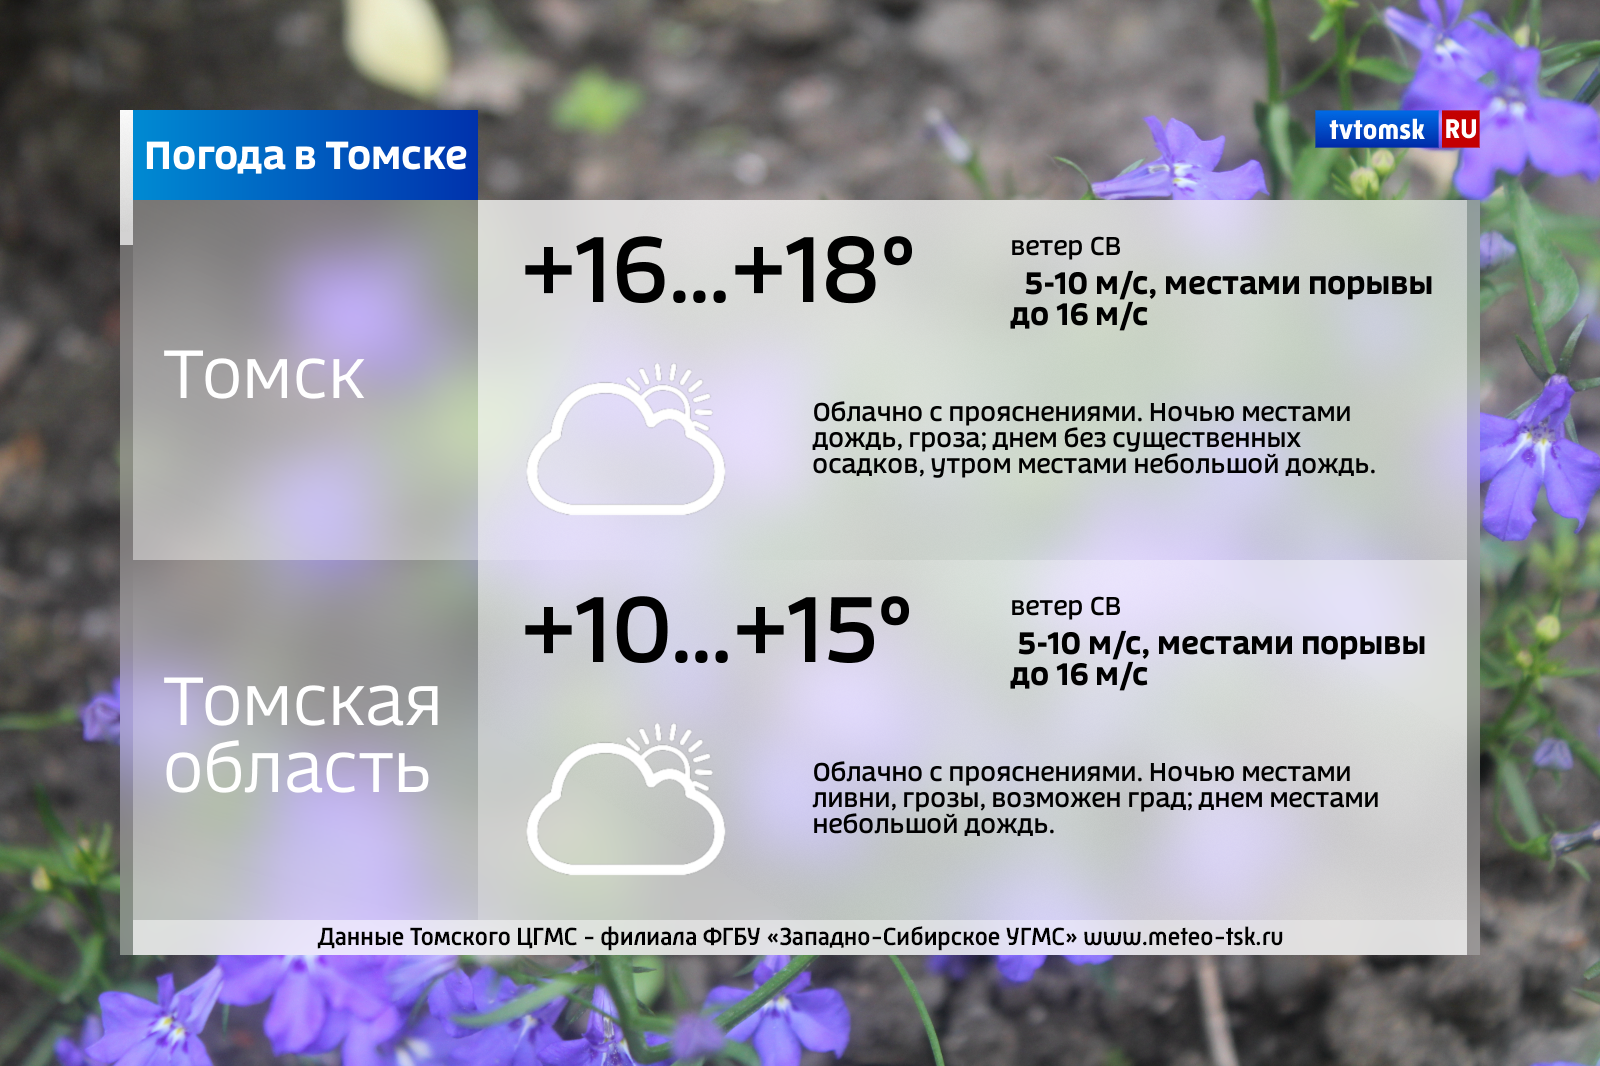 Погода в томском. Погода в Томске. Погода в Томске сейчас. Погода в Томске на завтра. Погода в Томске сегодня.